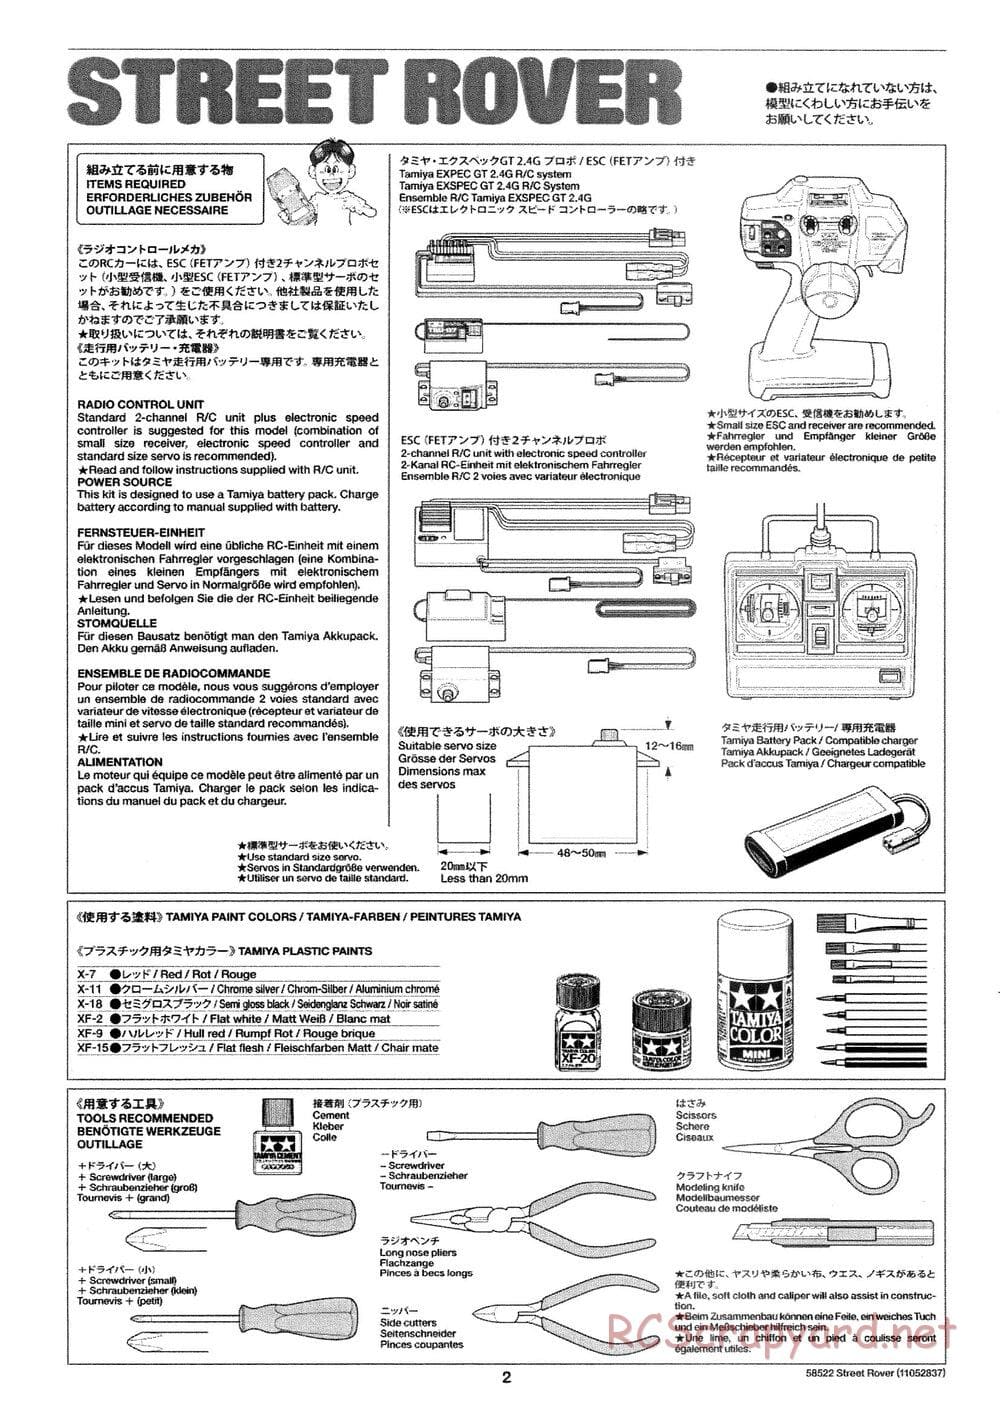 Tamiya - Street Rover Chassis - Manual - Page 3